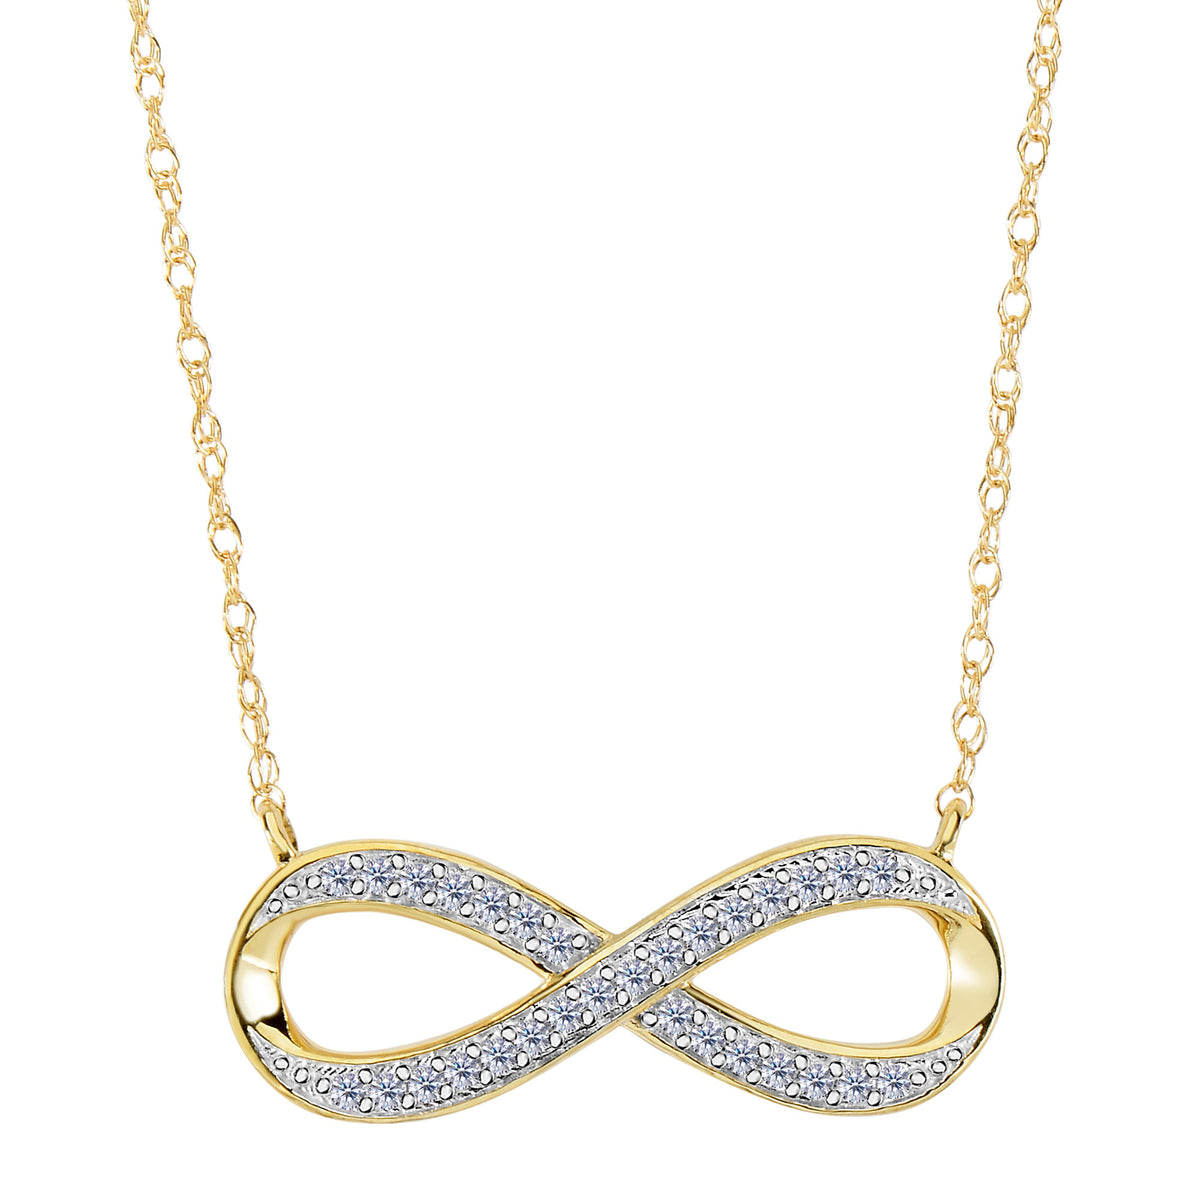 Collar infinito de oro amarillo de 14 quilates con diamantes de 0,10 quilates: joyería fina de diseño de 18 pulgadas para hombres y mujeres